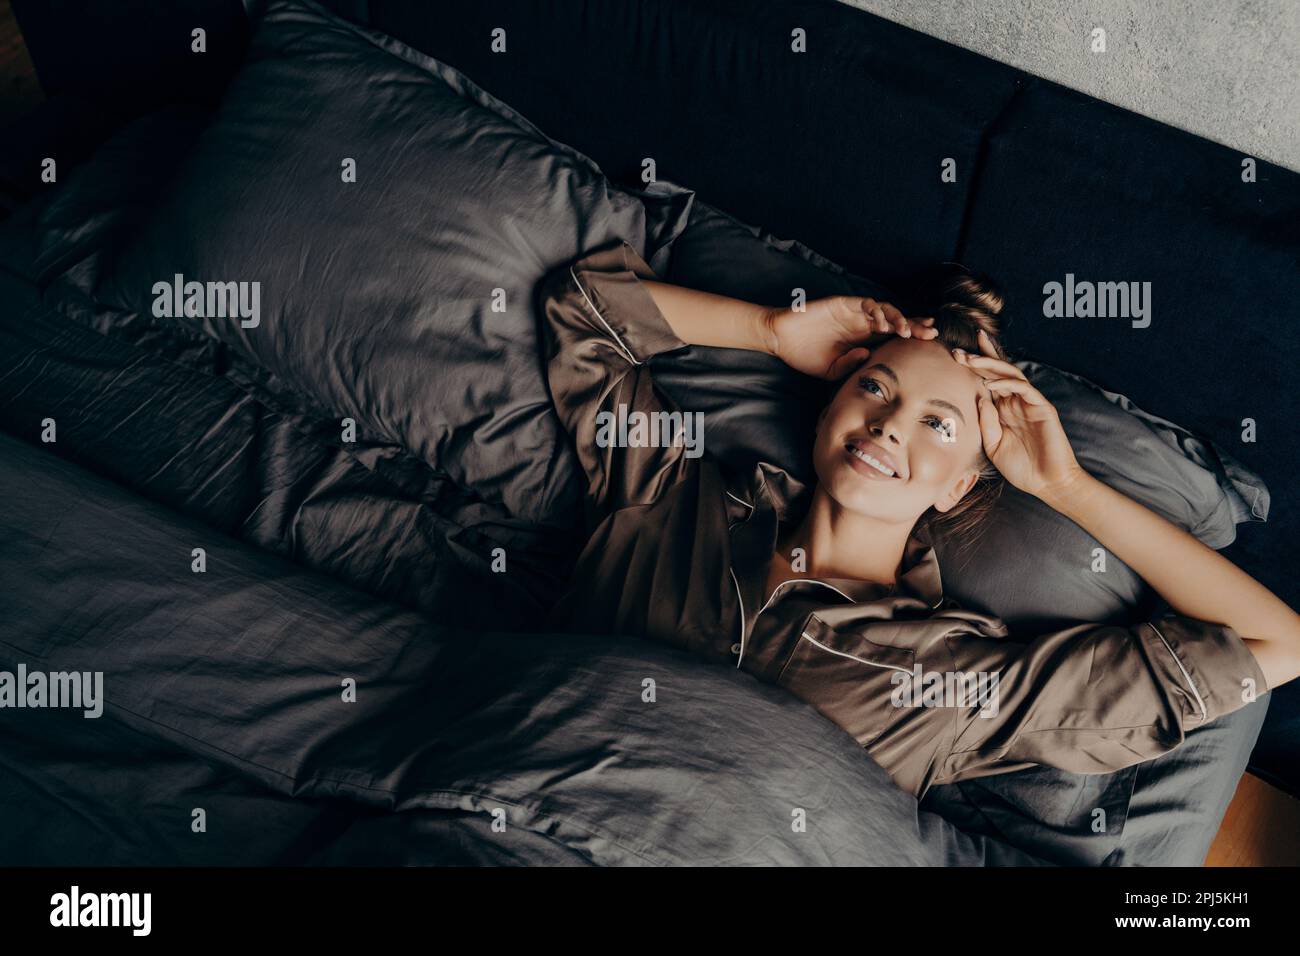 Bild eines jungen, wunderschönen, verschlafenen Mädchens in einem satinbequemen Pyjama, das am frühen Morgen im bequemen Bett aufwacht und sich am neuen Tag freut, glücklich und breit Stockfoto